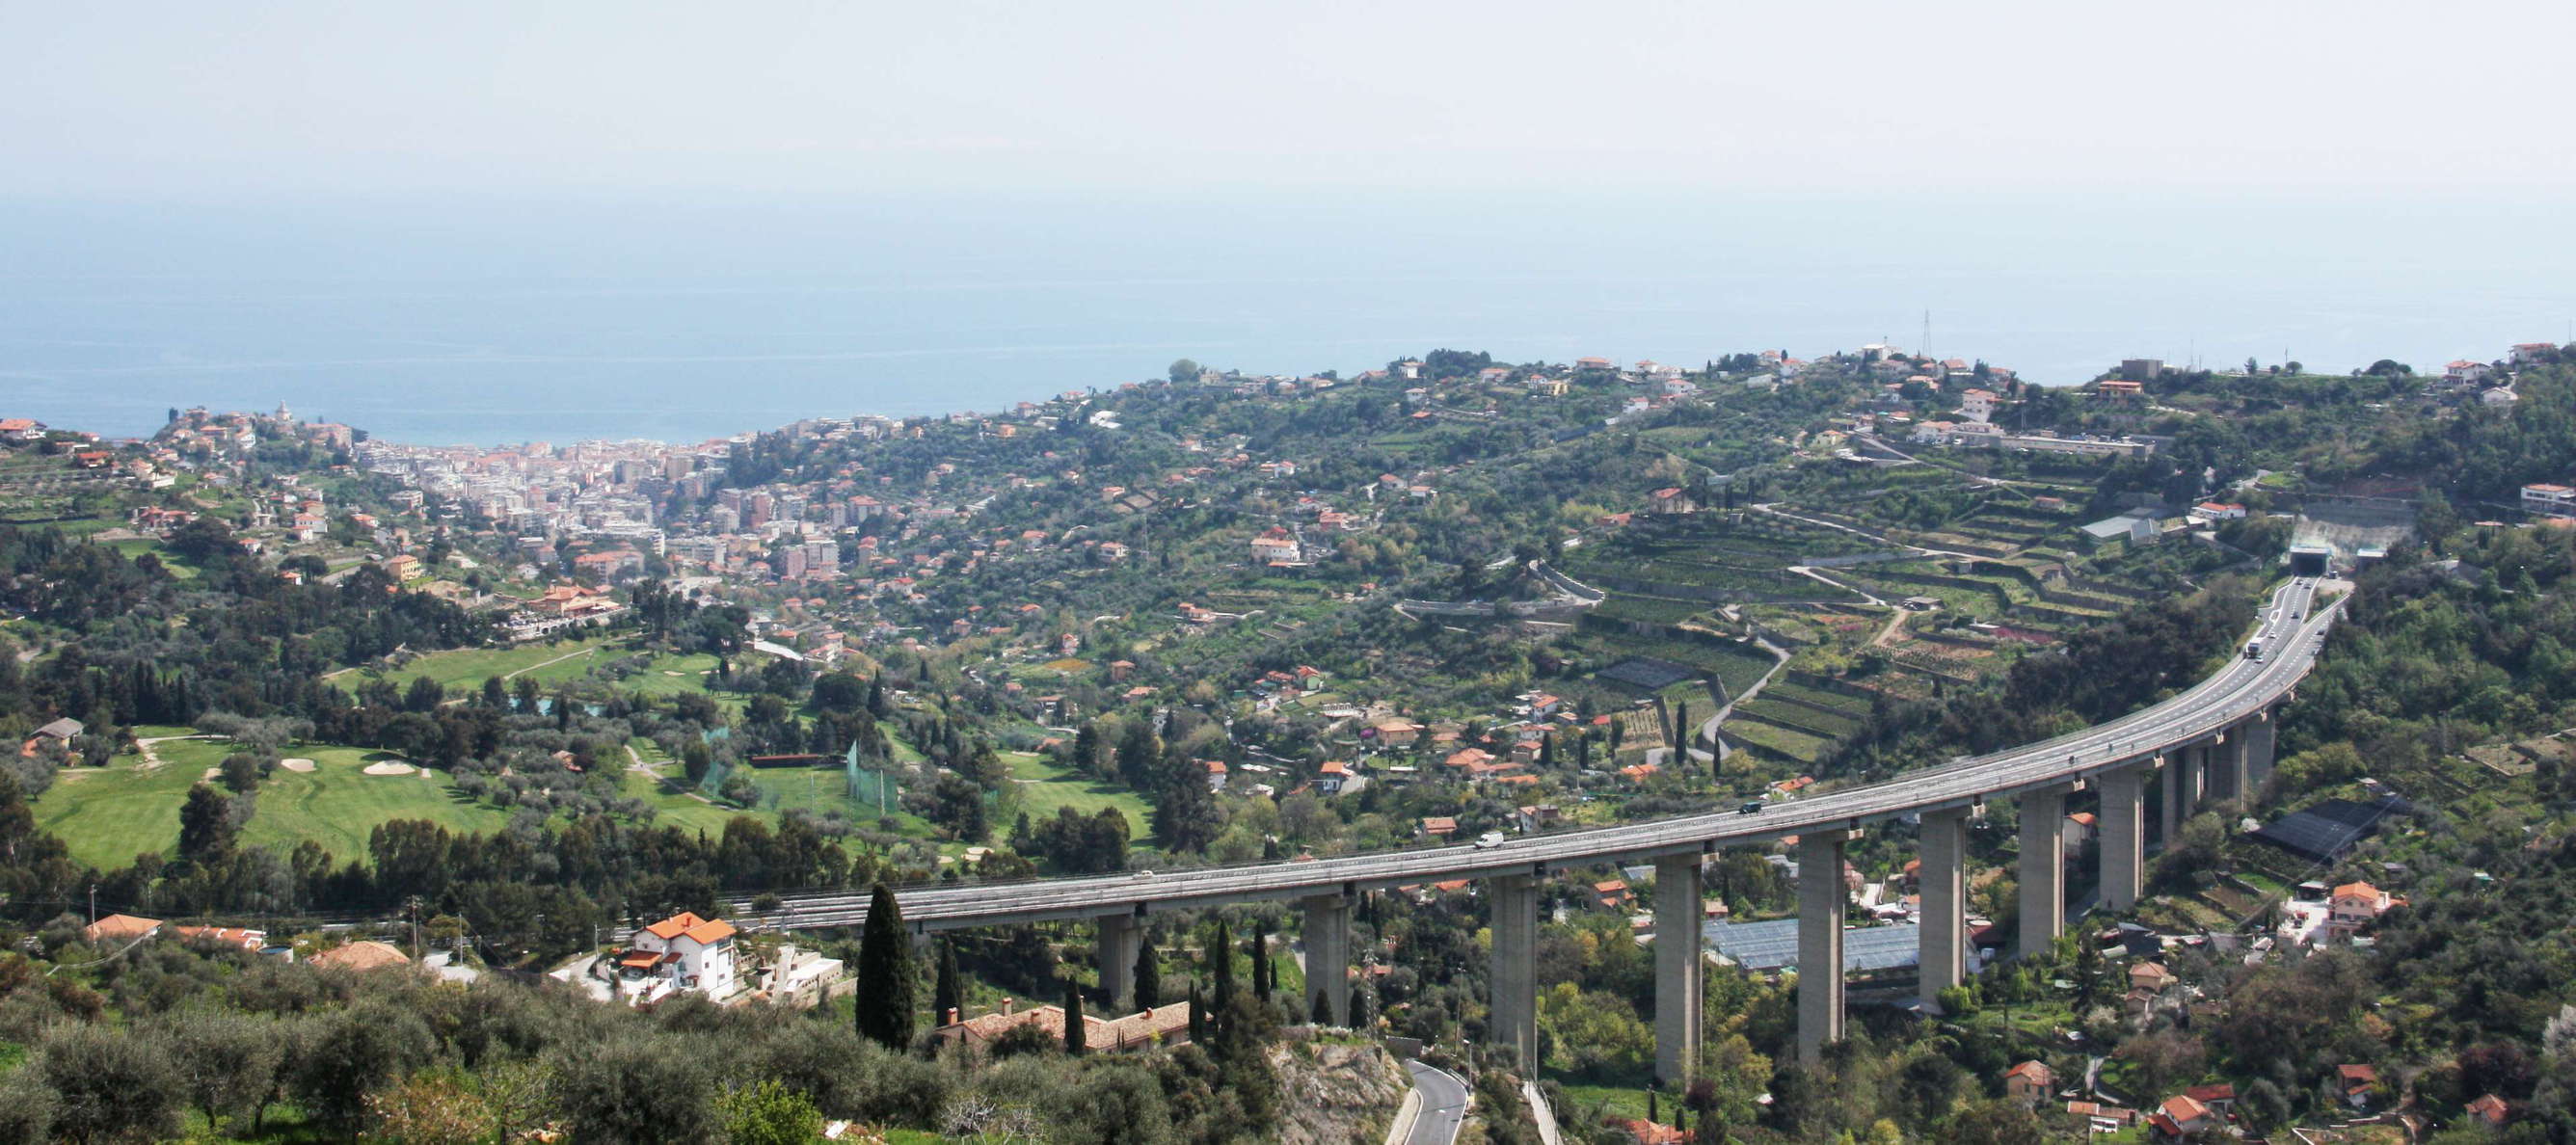 Sanremo and A10 Motorway bridge